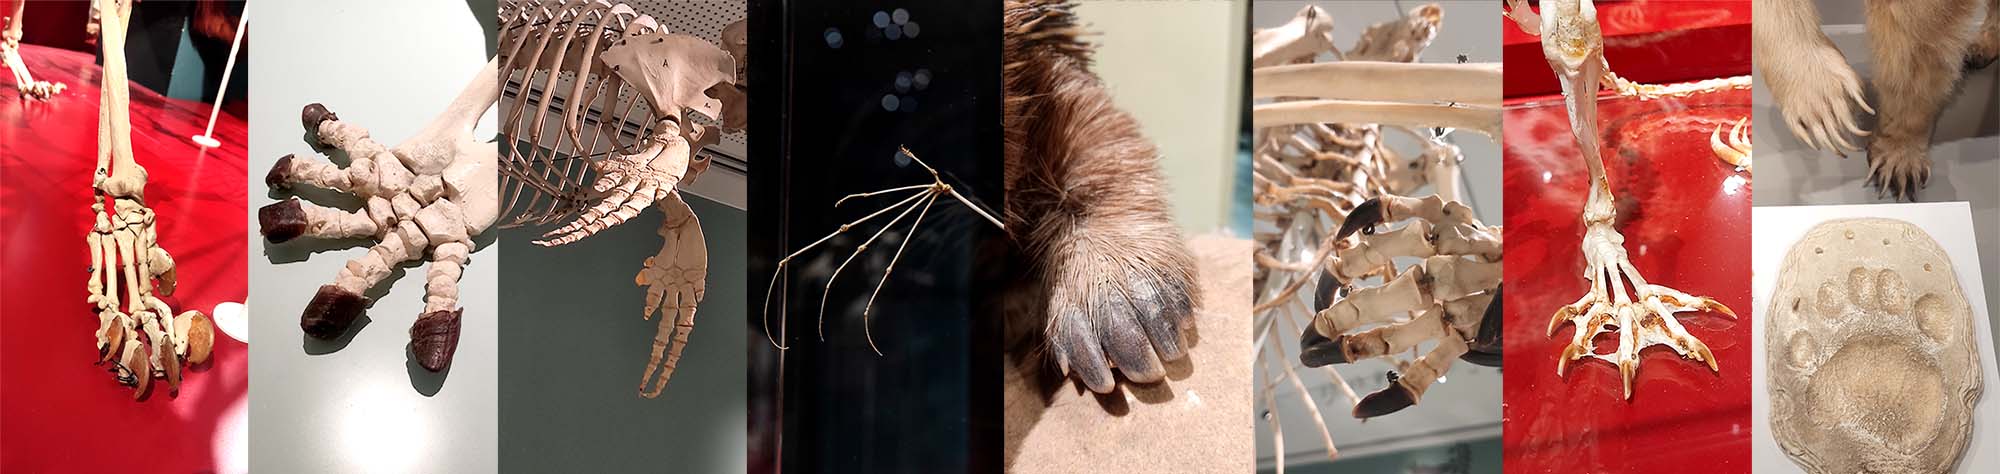 5 אצבעות אצל מינים שונים, מימין לשמאל: דוב חום סורי, נוטרייה, קנגרו אפור מזרחי, קיפוד נמלים, עטלף פרי מצוי, דולפינן מצוי, צב ענק, נמר (פרטים מתוך תערוכות המוזיאון)